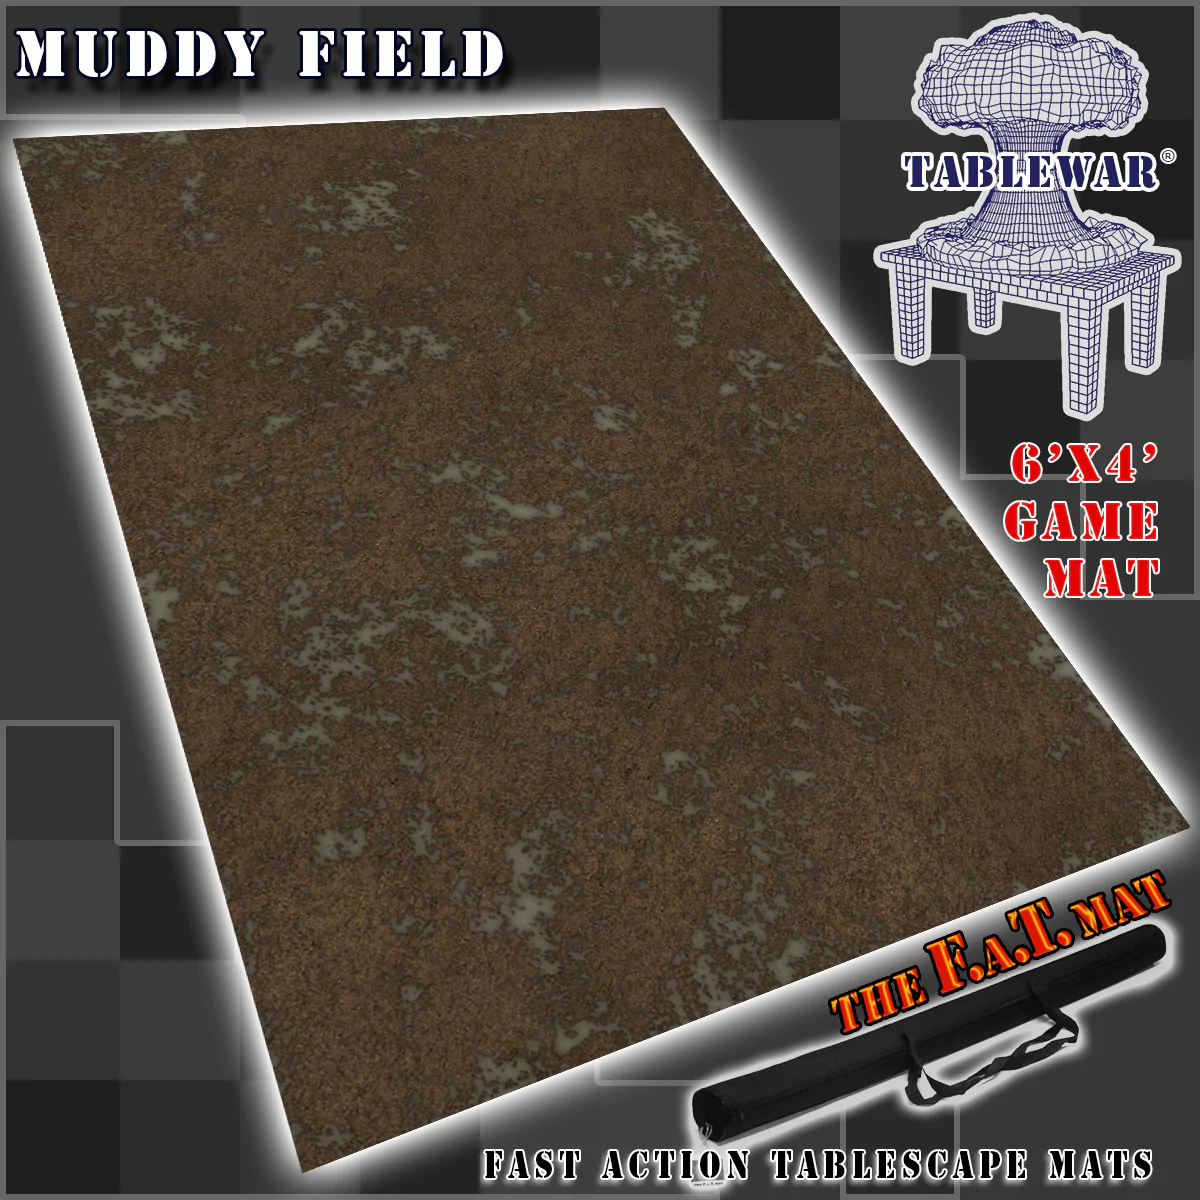 F.A.T. Mats: Muddy Field 6X4